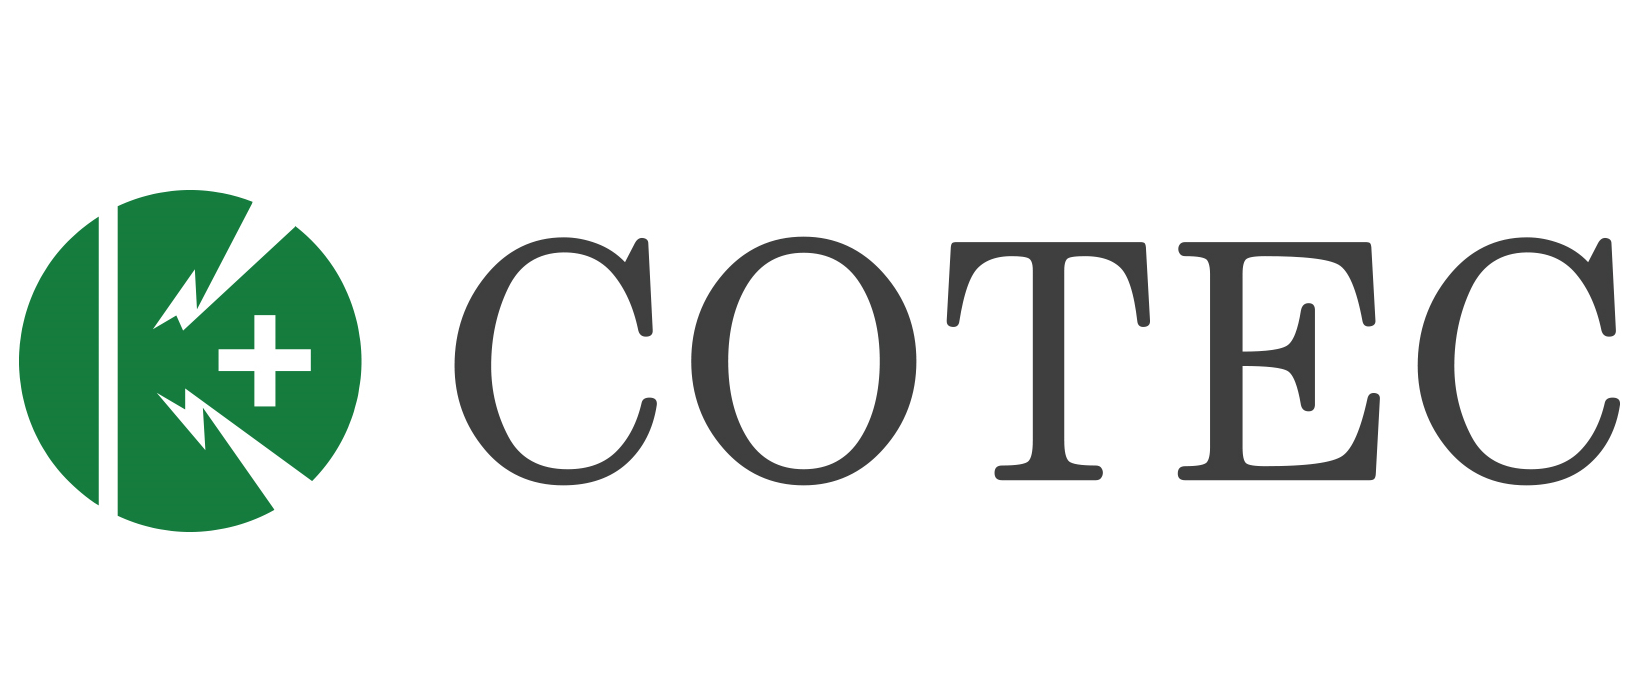 코텍의 계열사 (주)코텍의 로고